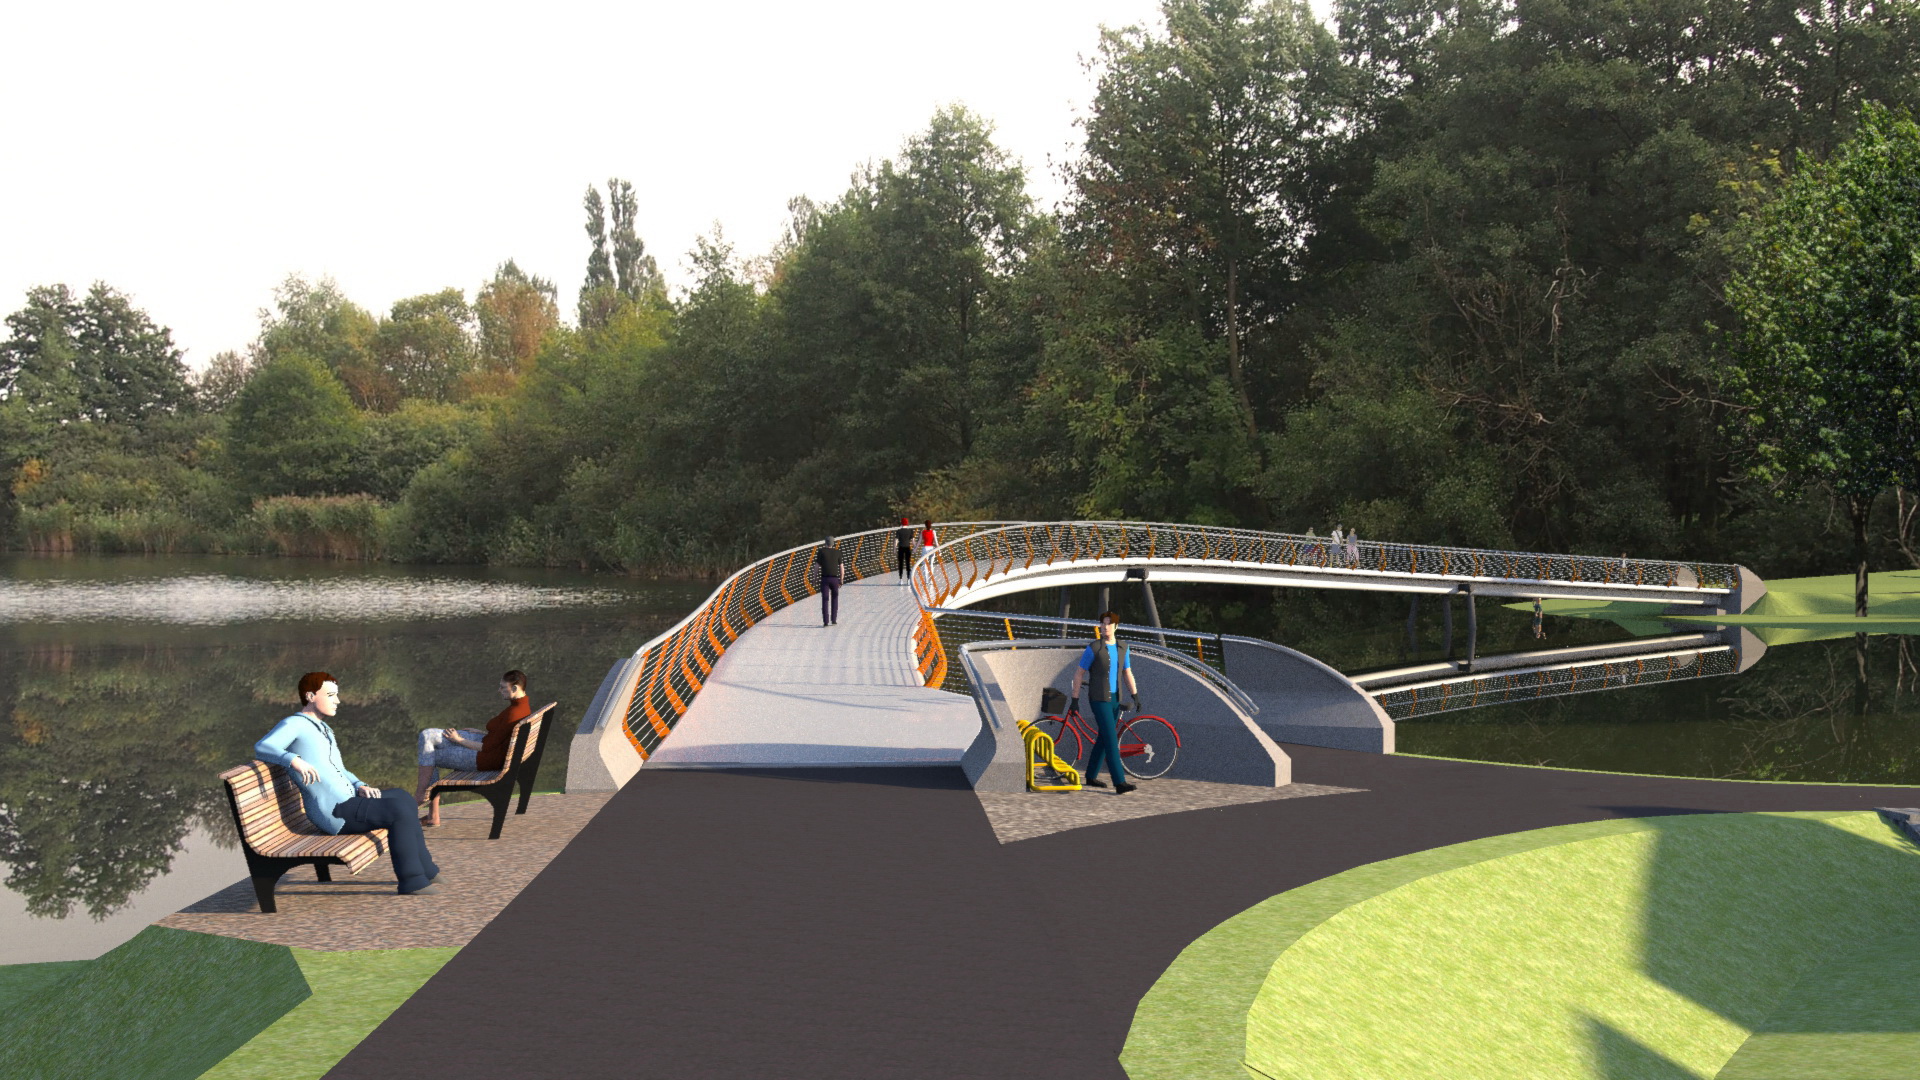 Neubau der Stadionbrücke für Fußgänger und Radfahrer?